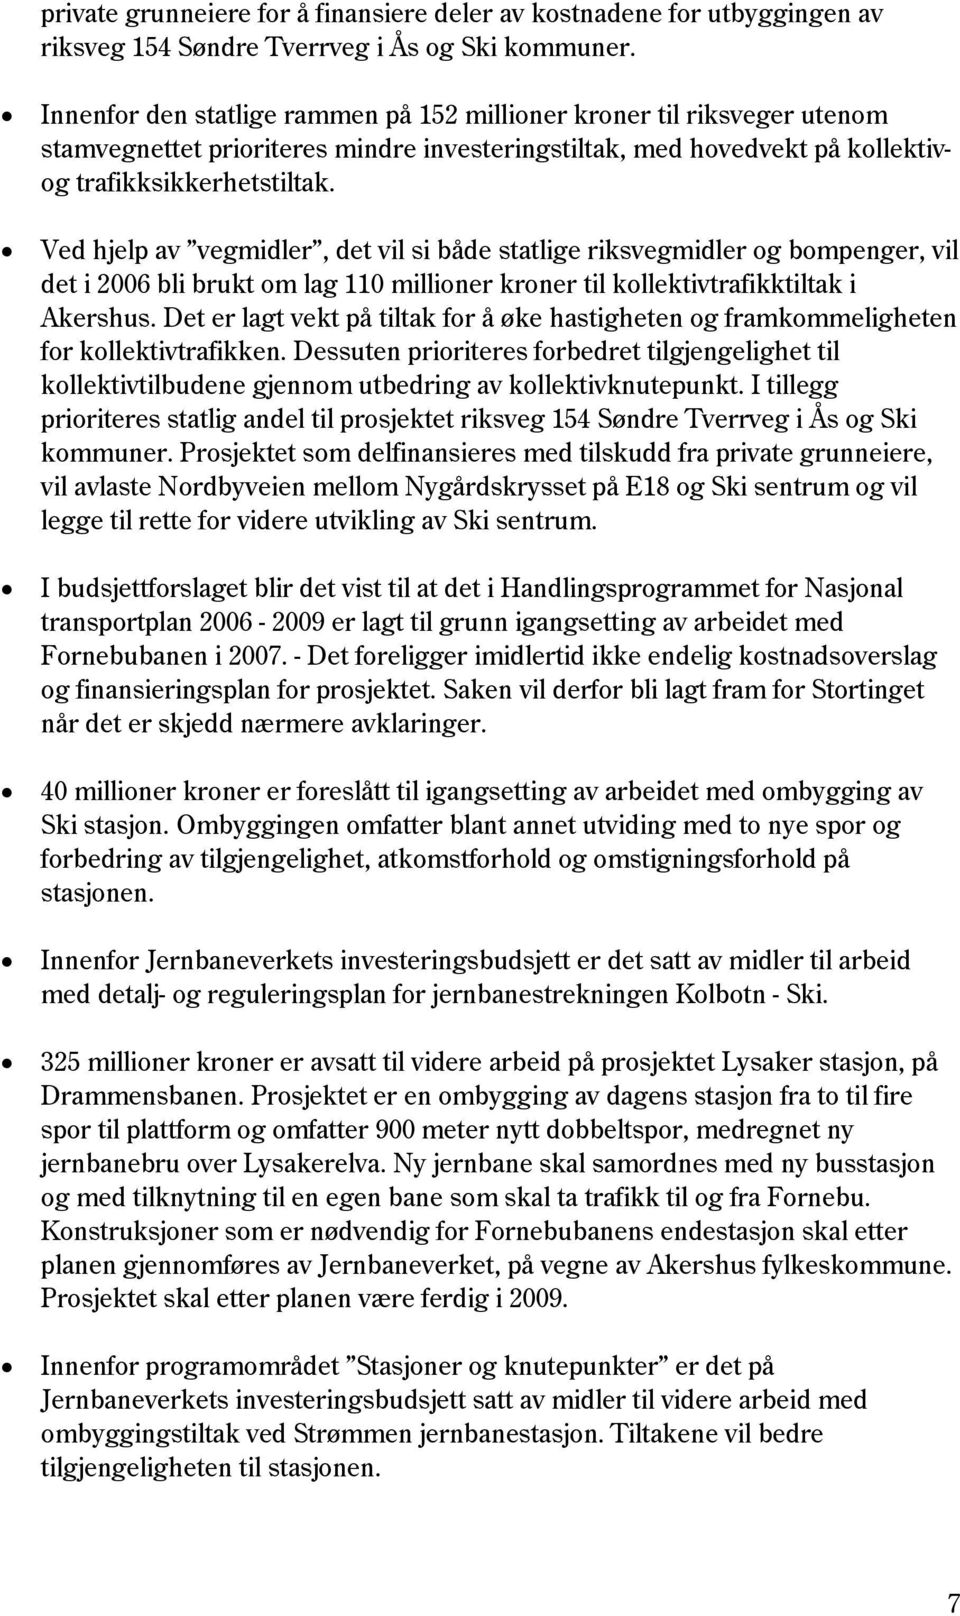 Ved hjelp av vegmidler, det vil si både statlige riksvegmidler og bompenger, vil det i 2006 bli brukt om lag 110 millioner kroner til kollektivtrafikktiltak i Akershus.